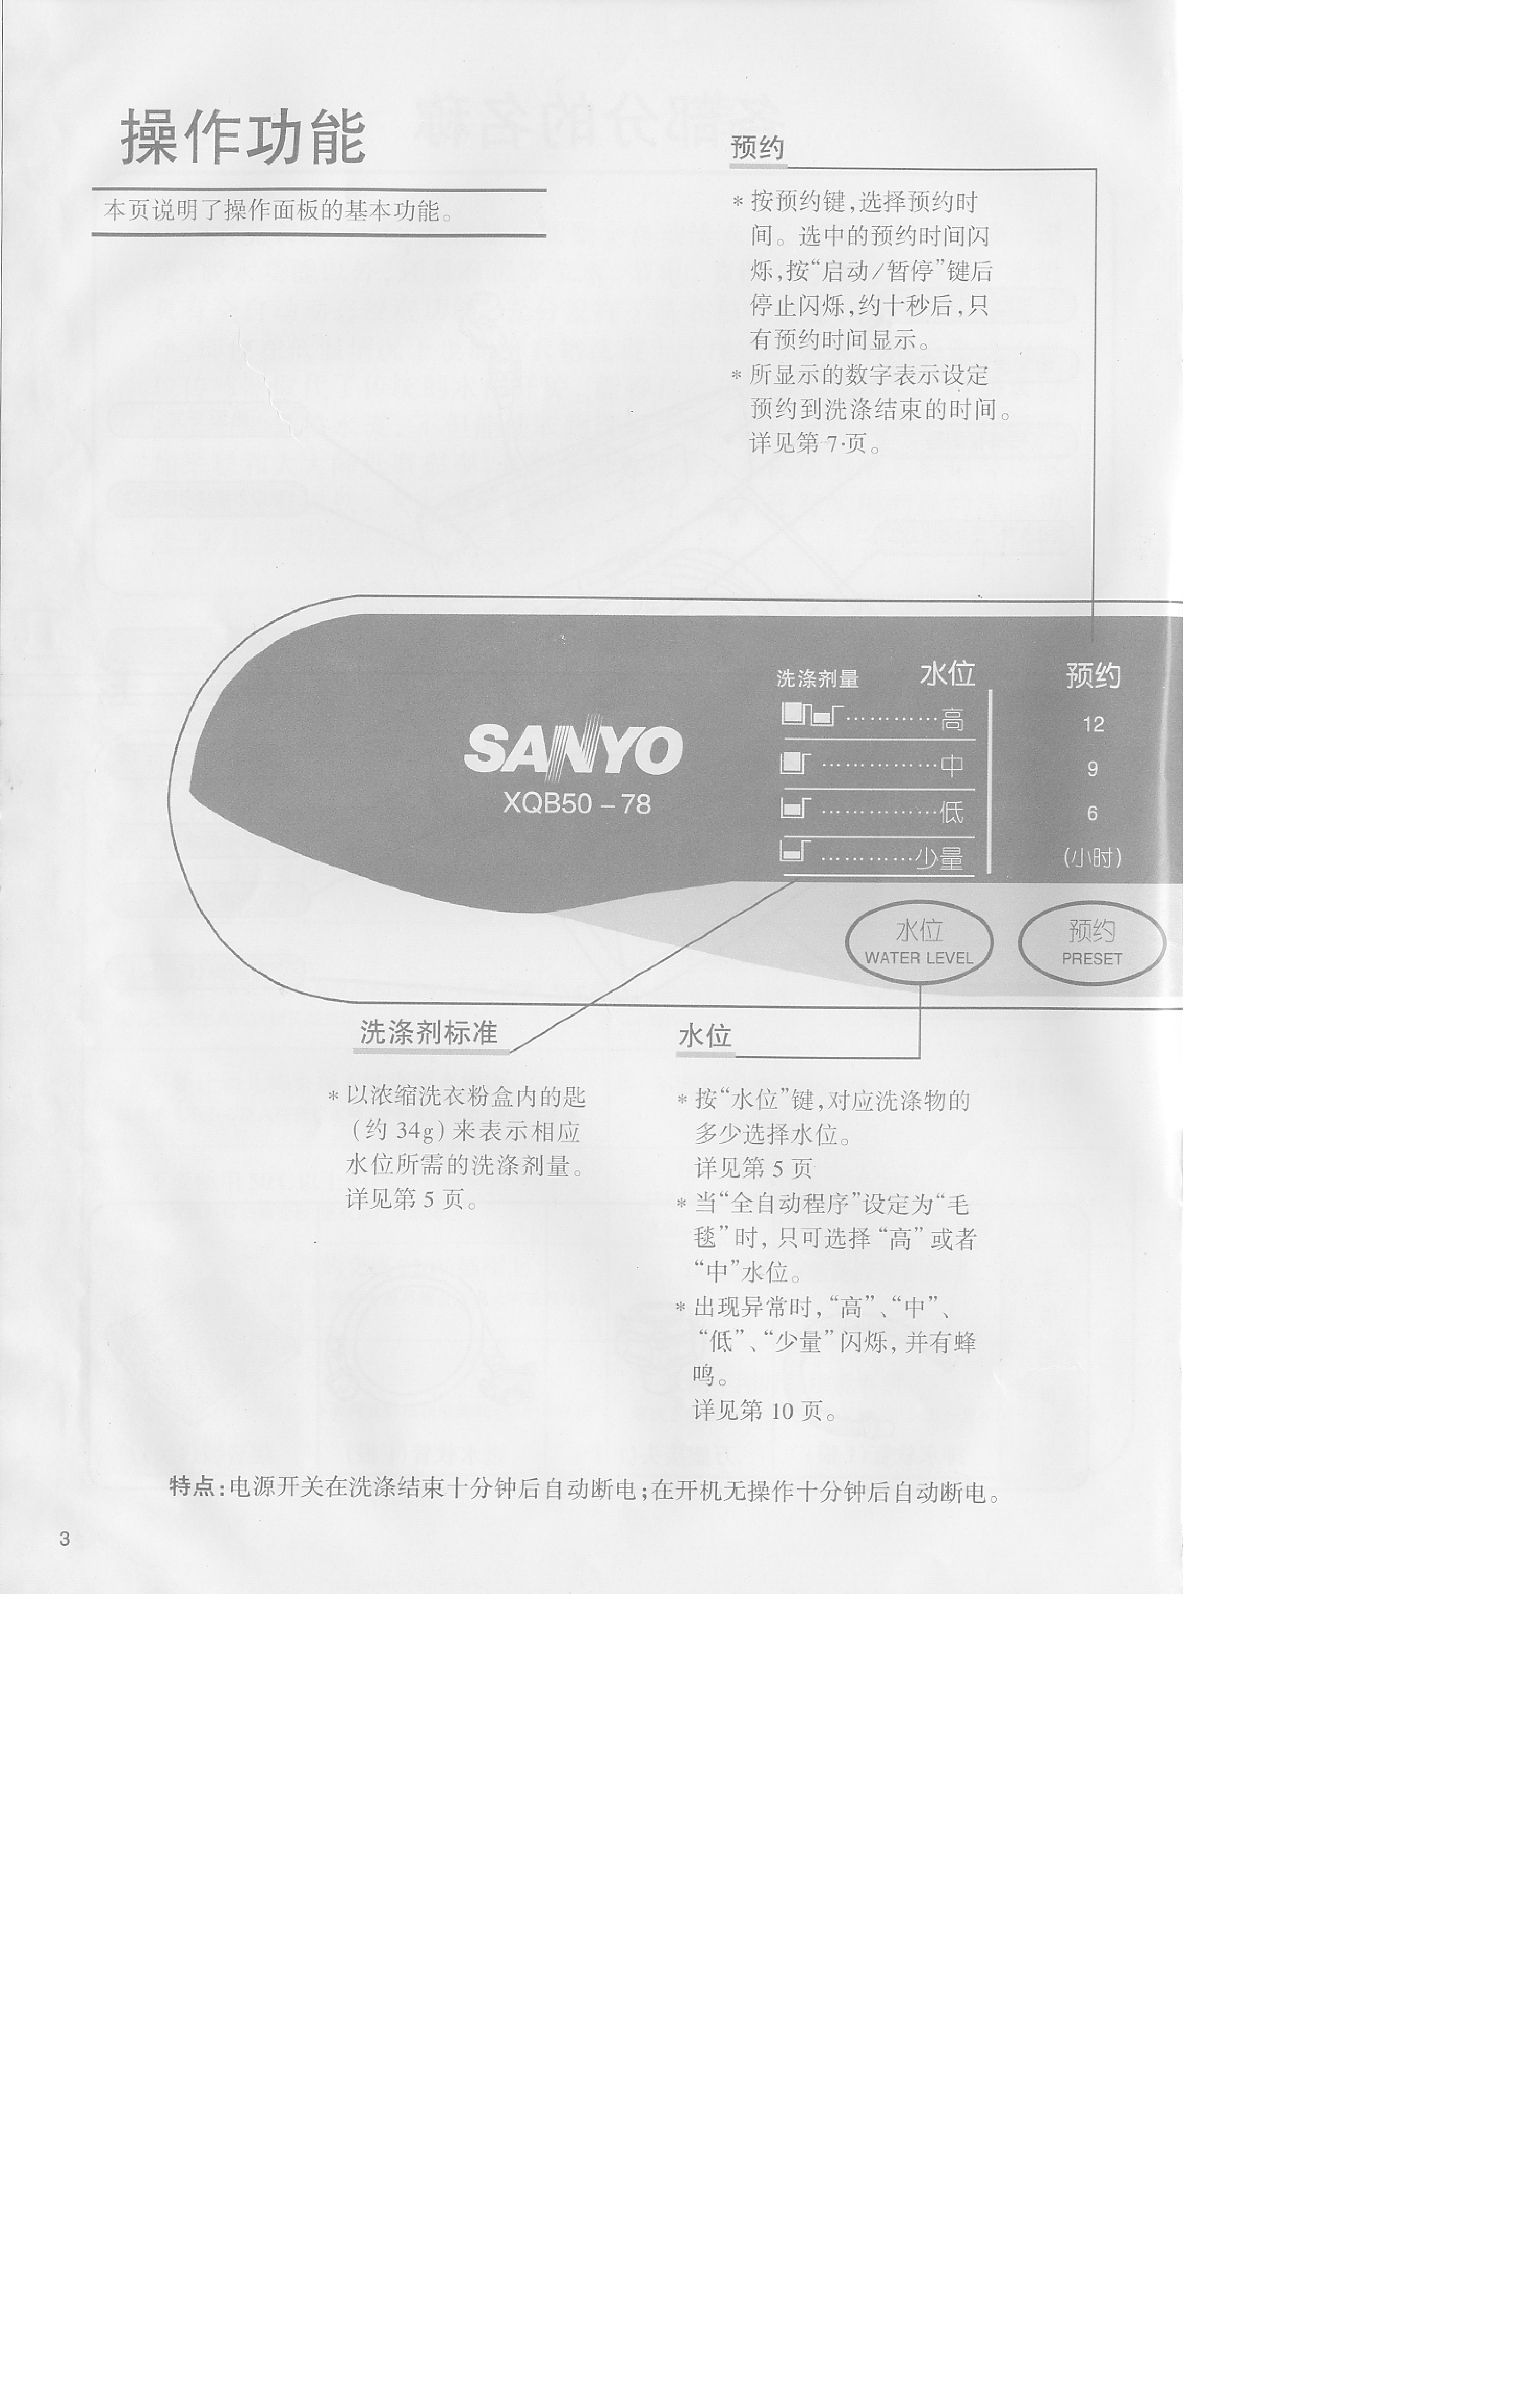 三洋 Sanyo XQB50-78 用户指南 第3页